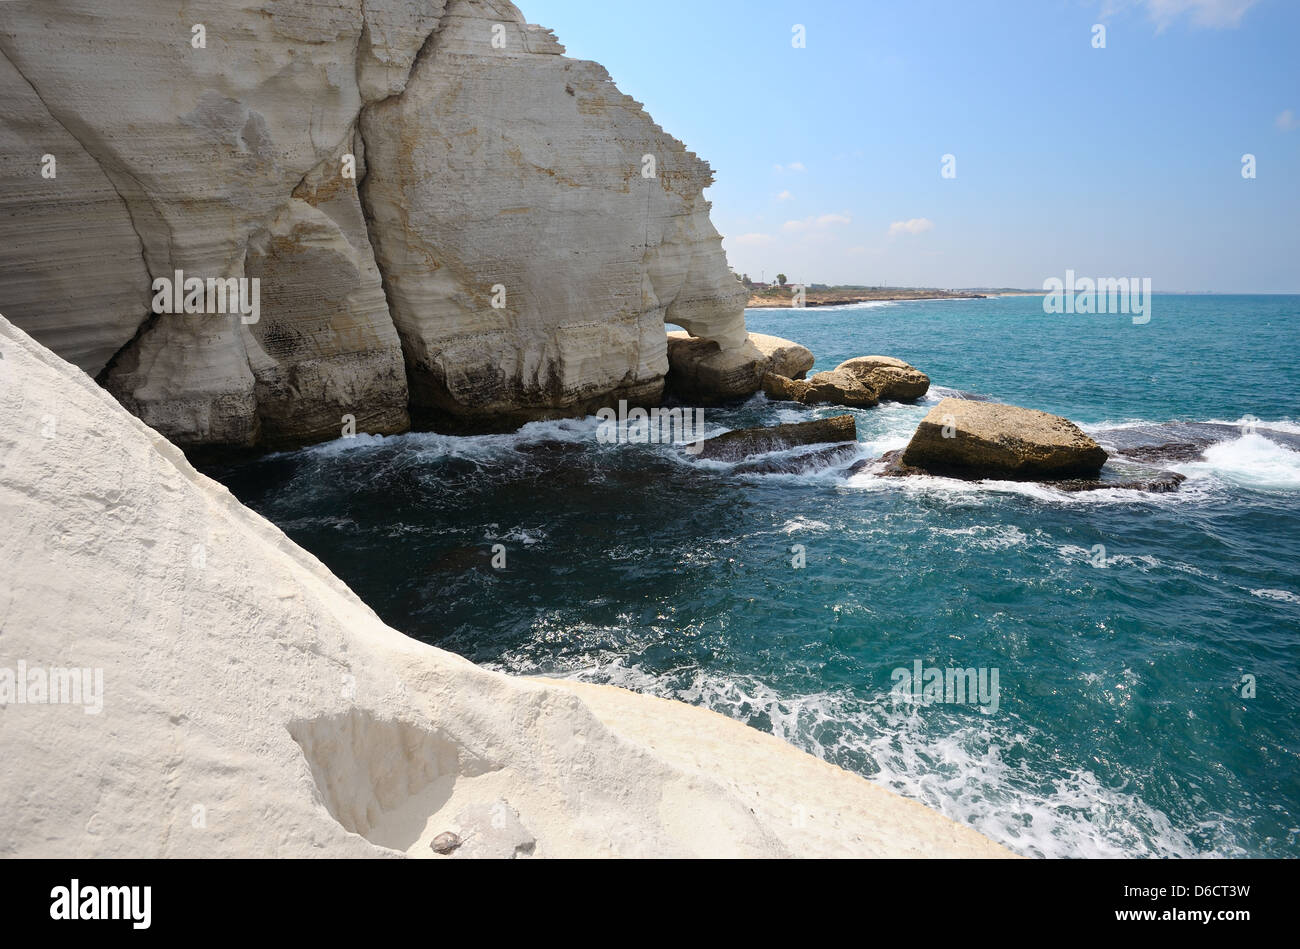 The white chalk cliffs of Rosh ha-Hanikra Stock Photo